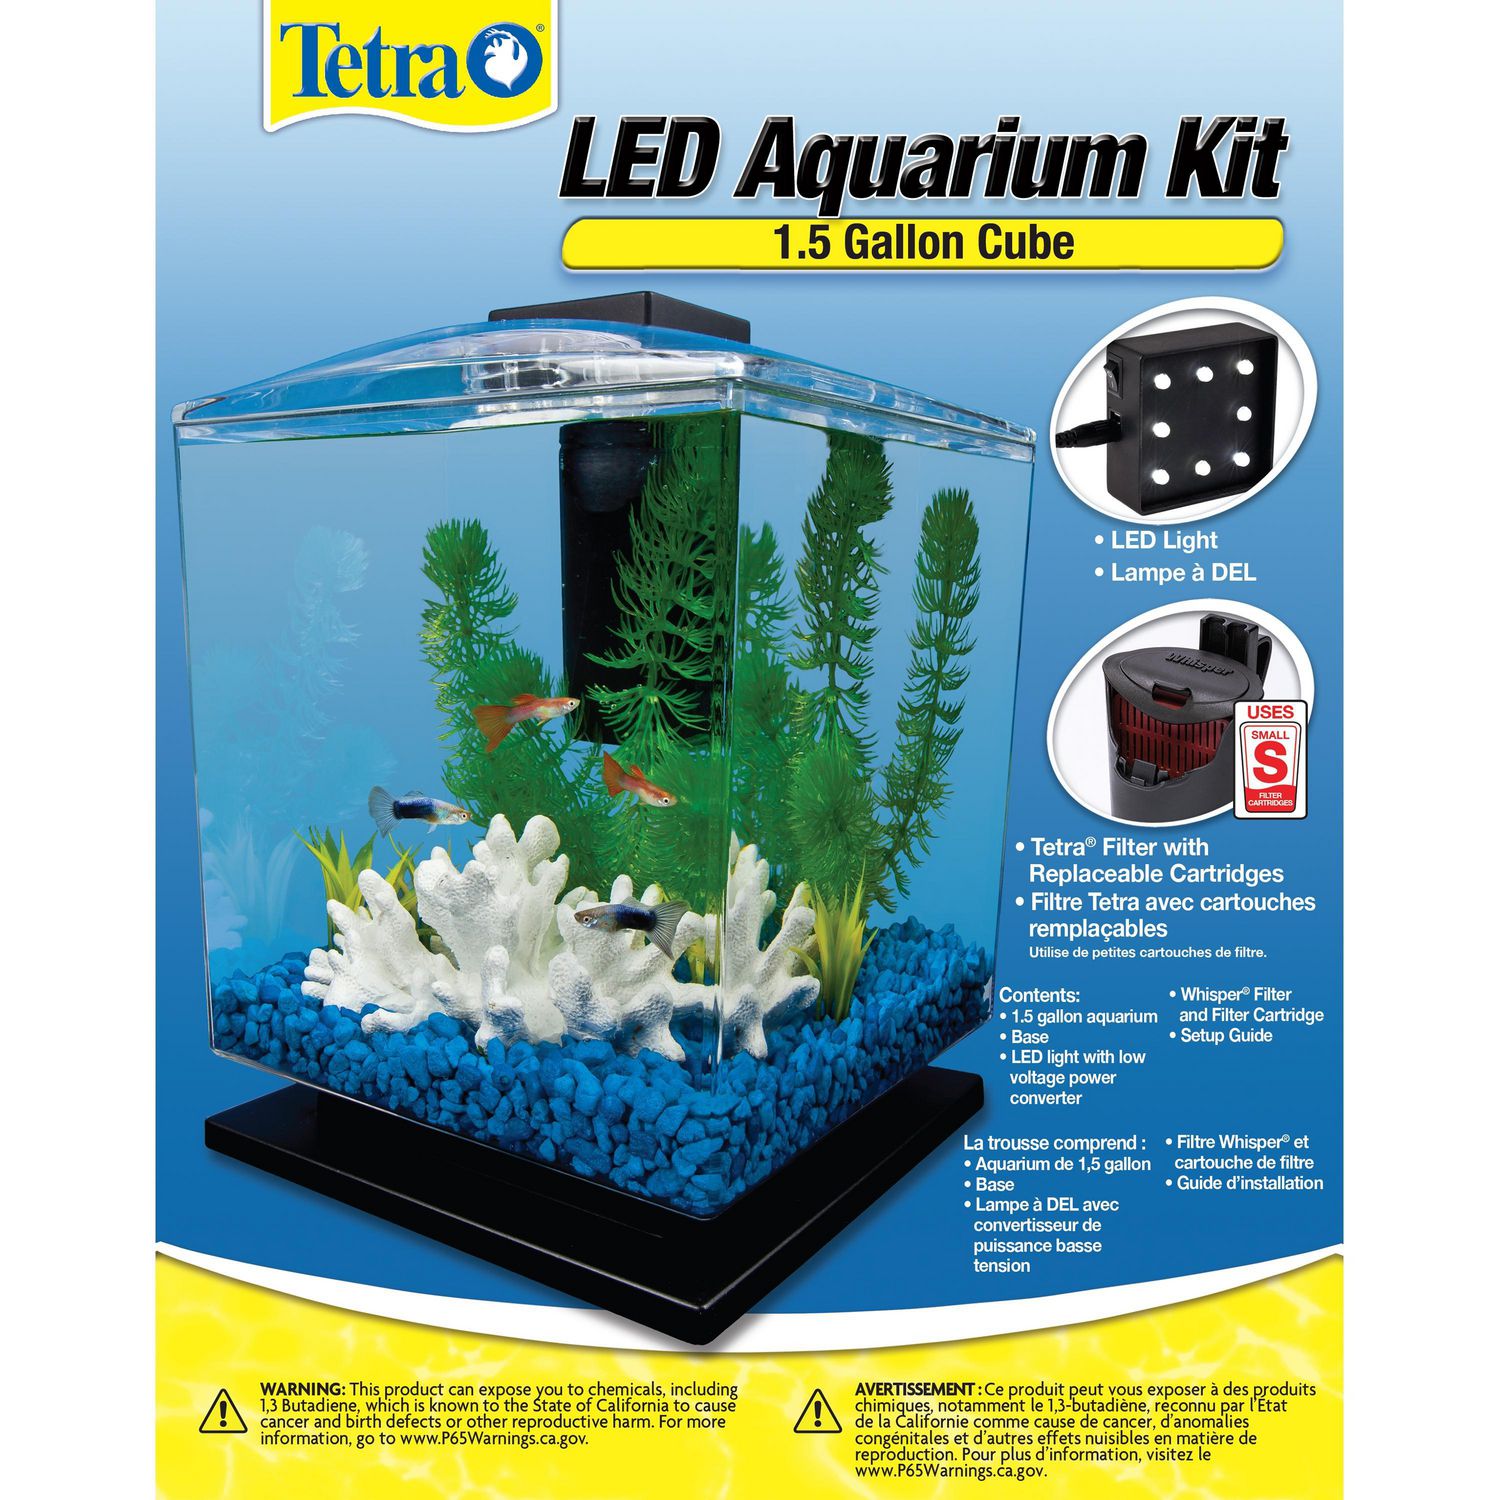 tetra aquarium kit